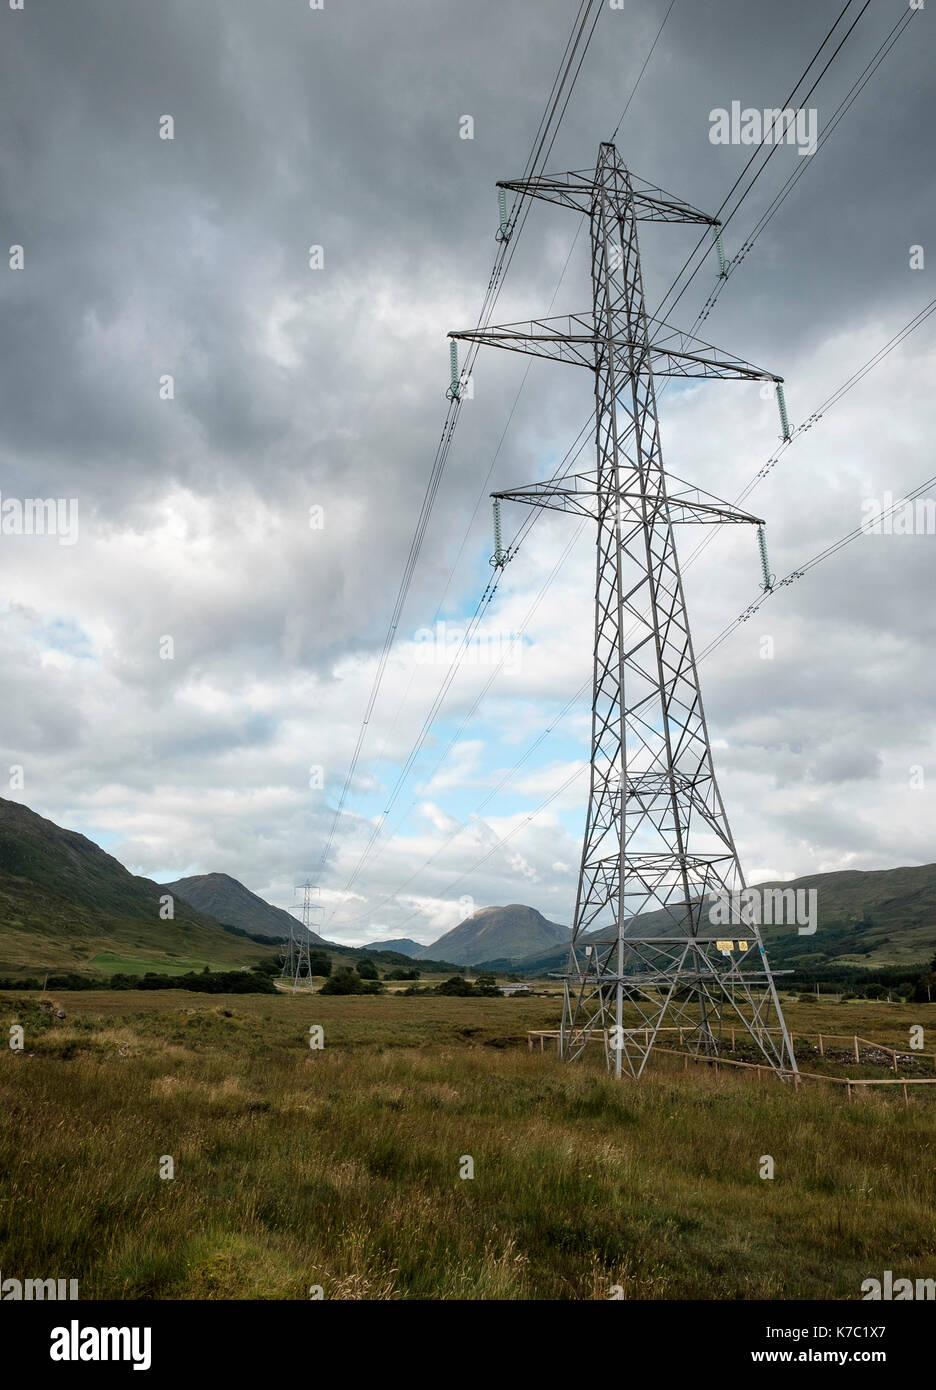 Pylônes électriques dans la ville pittoresque de campagne écossaise près de Loch Awe Allt plus Mhoille, Argyll, Scotland Banque D'Images